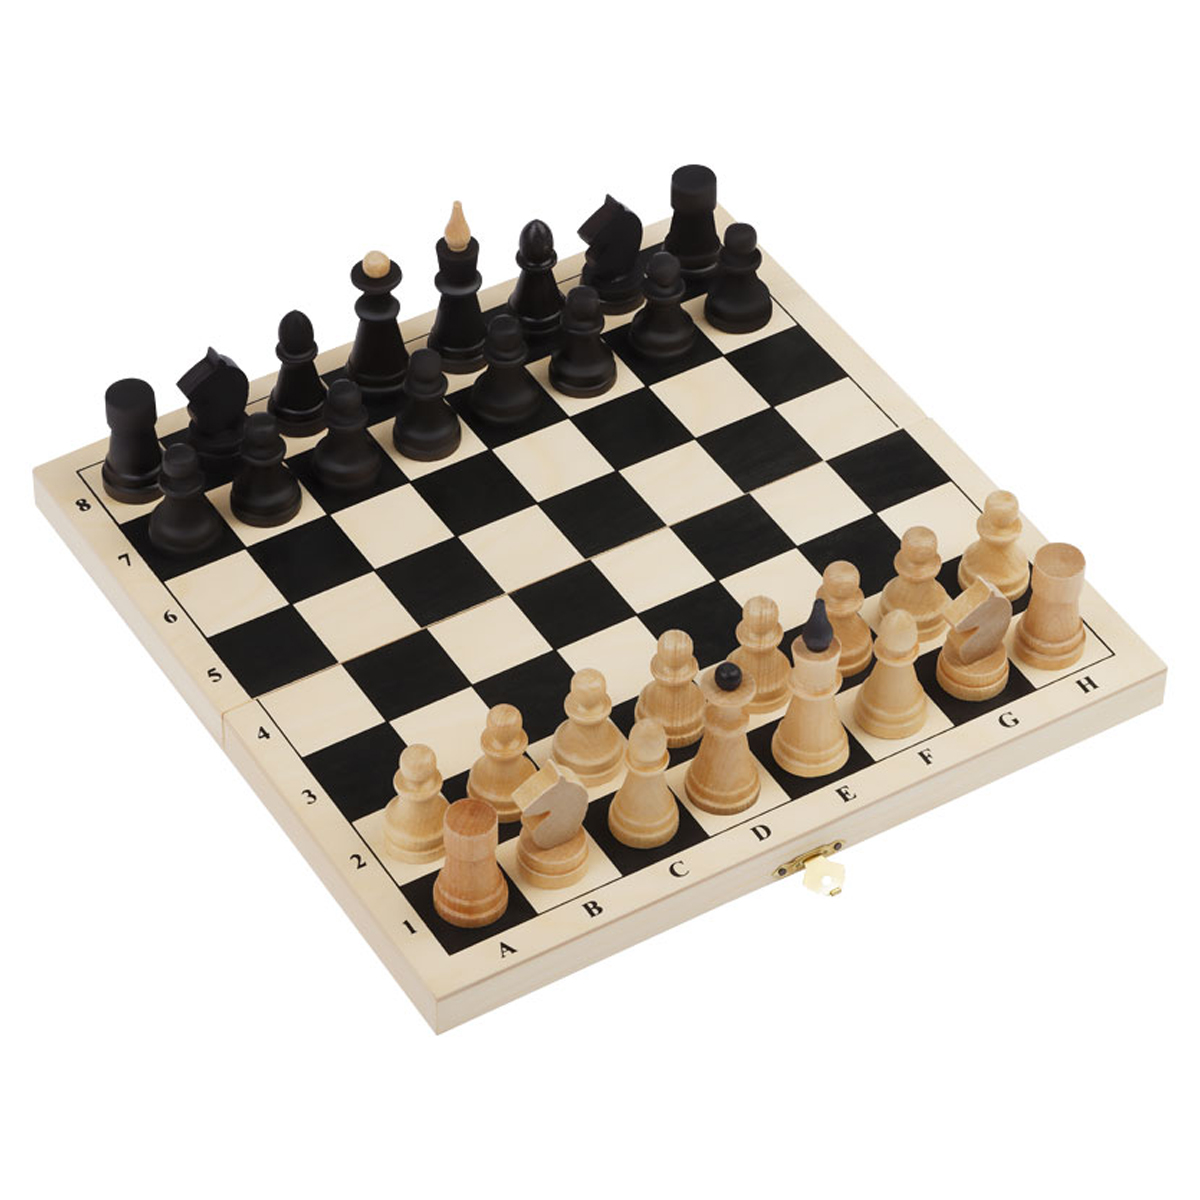 Шахматы ТРИ СОВЫ обиходные, деревянные с деревянной доской 29*29 см жизнь и шахматы